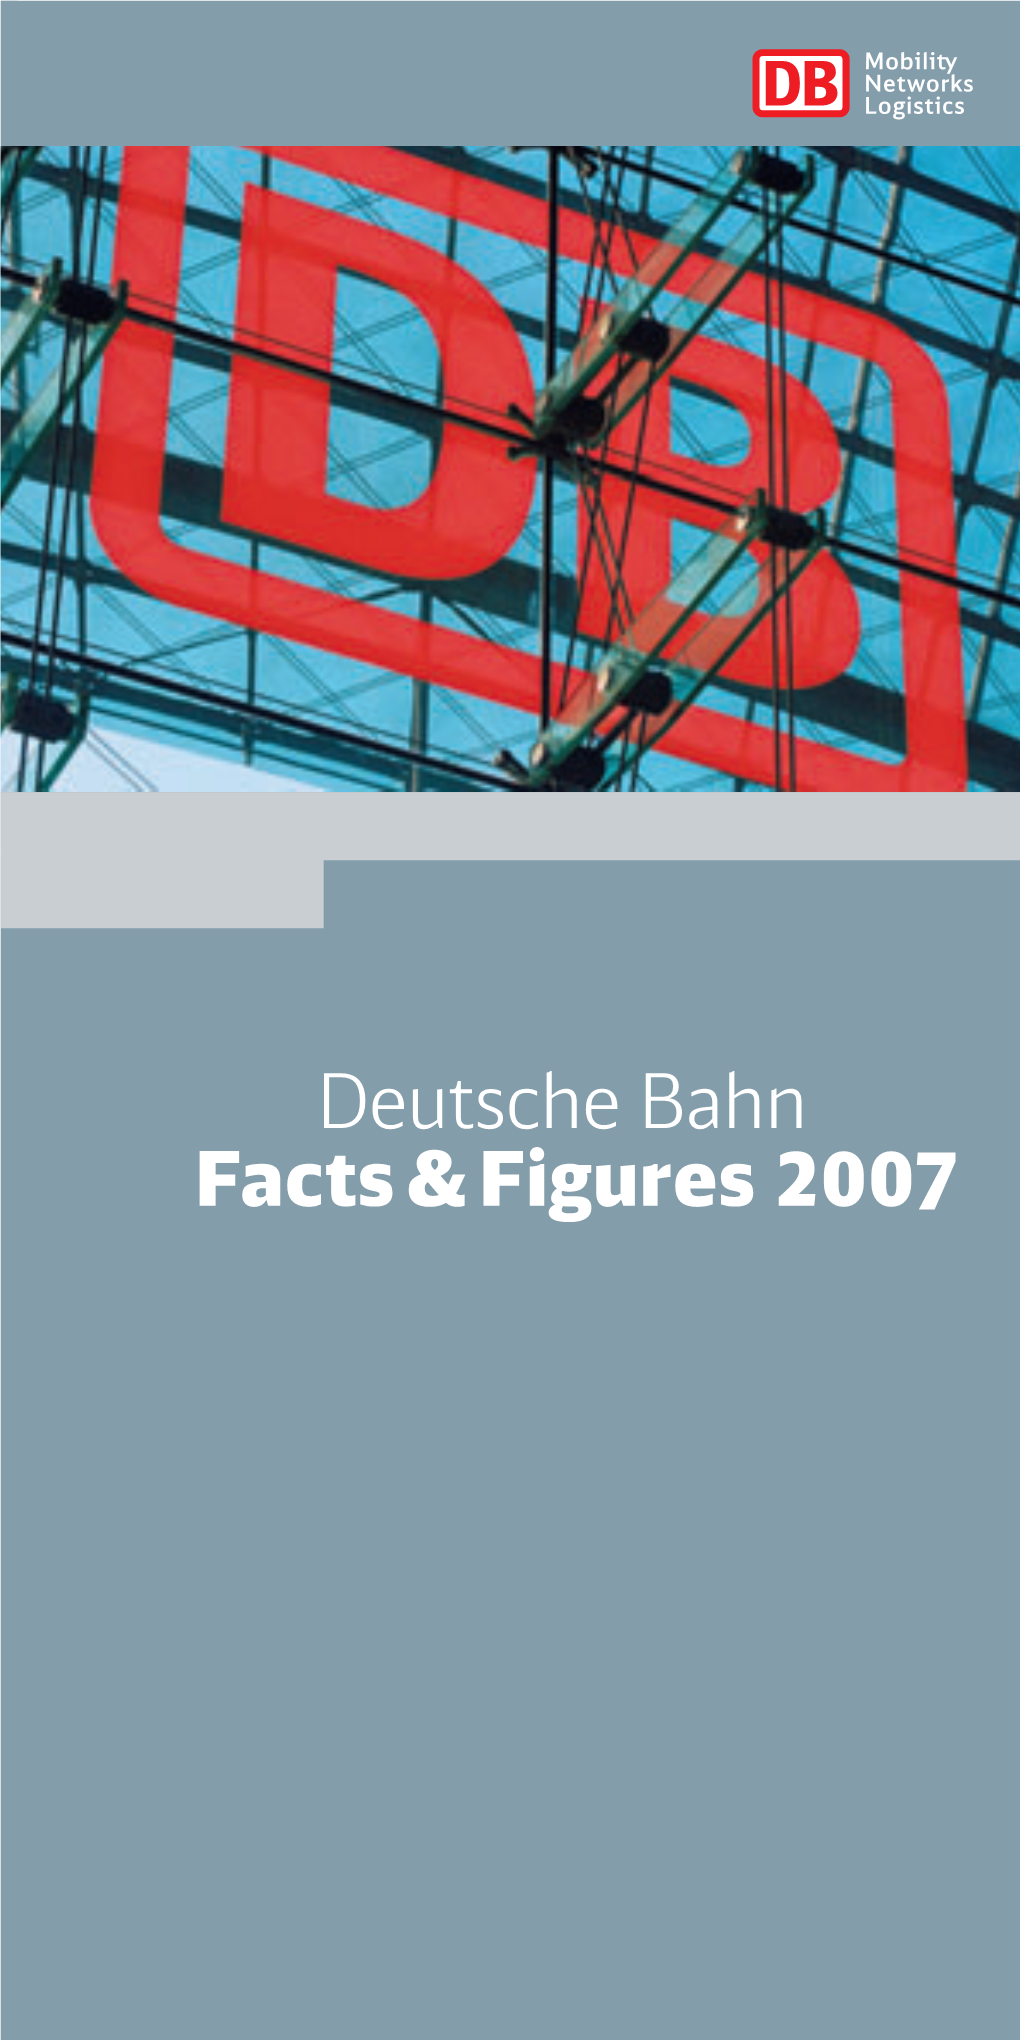 Deutsche Bahn Facts & Figures 2007